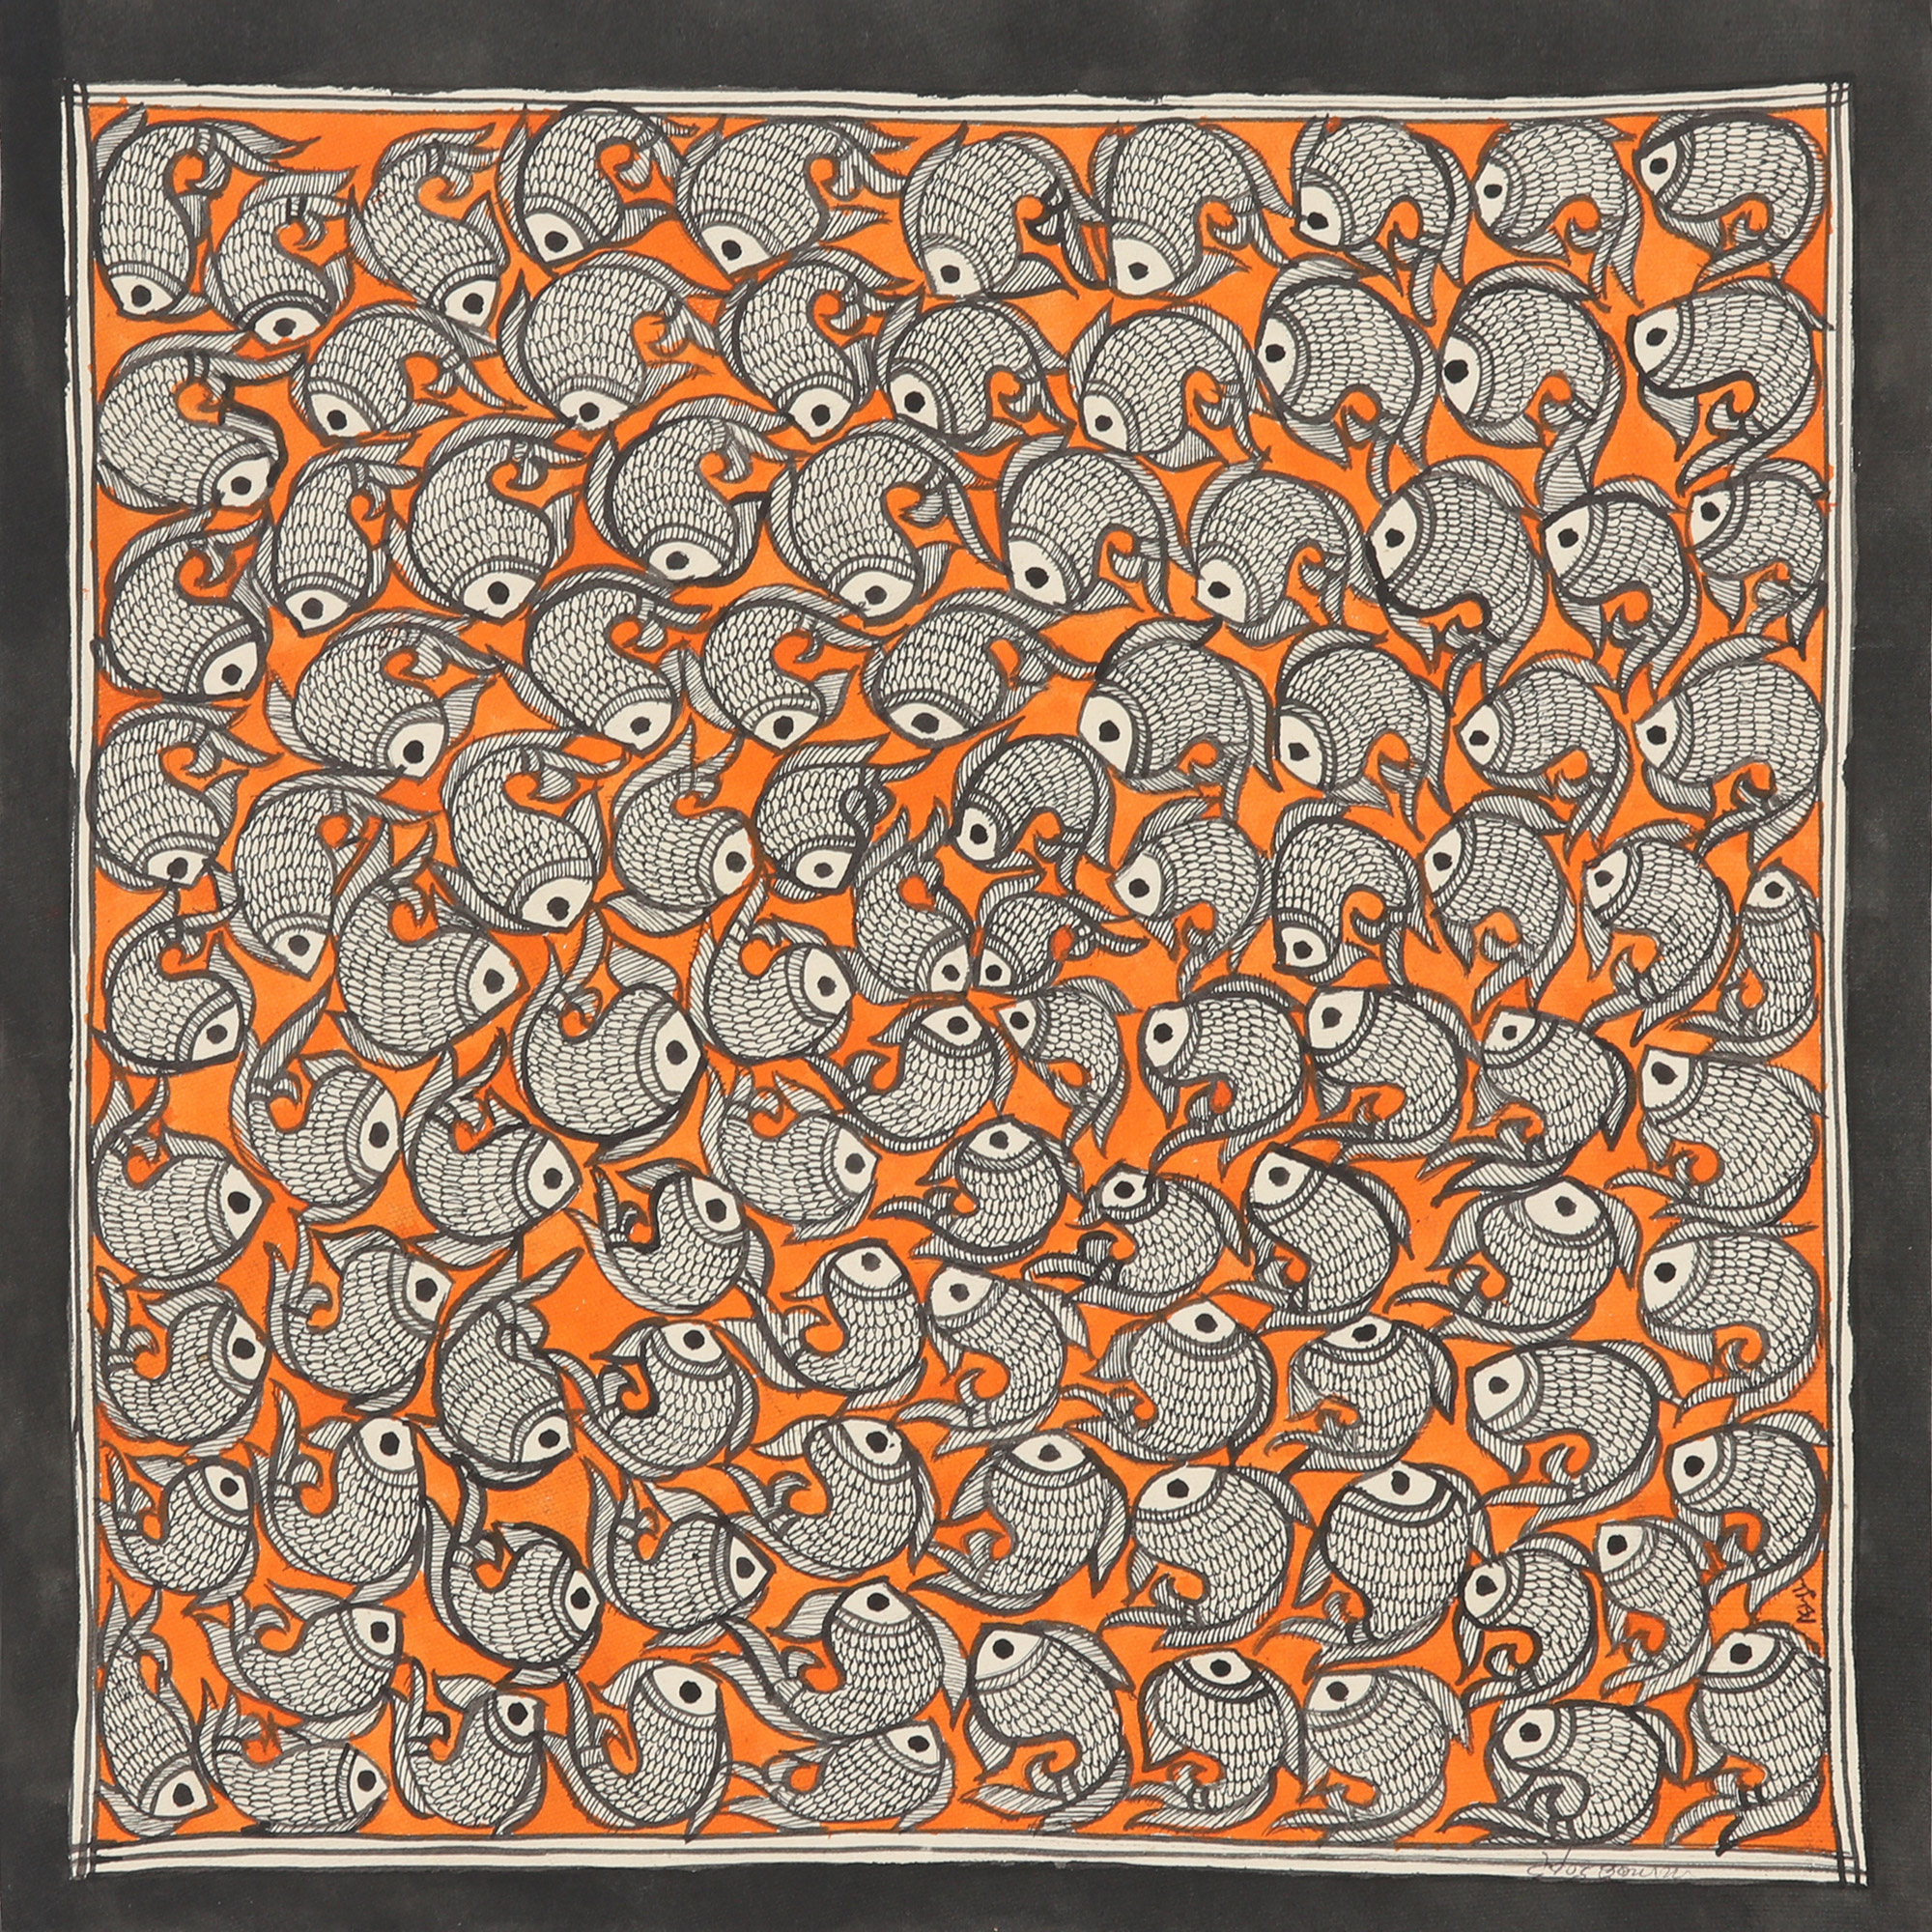 Signed Madhubani Painting of Fish over Orange Background - Fish Tale II |  NOVICA